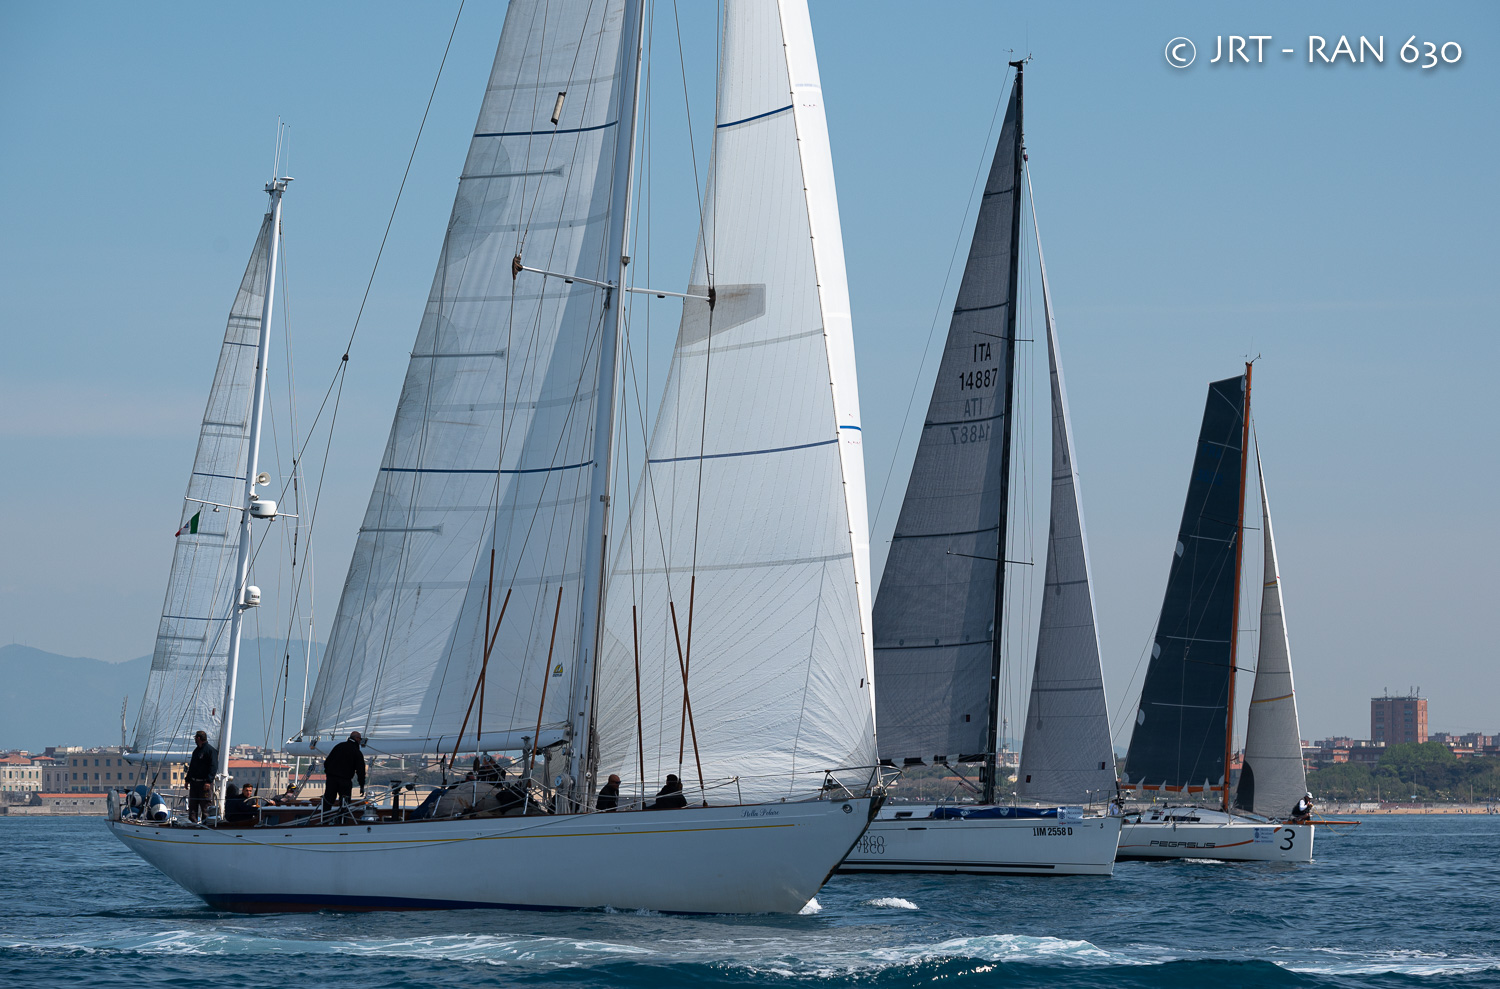   PARTITA LA RAN 630, REGATA DELL'ACCADEMIA NAVALE DI LIVORNO - News - Yacht Club Costa Smeralda